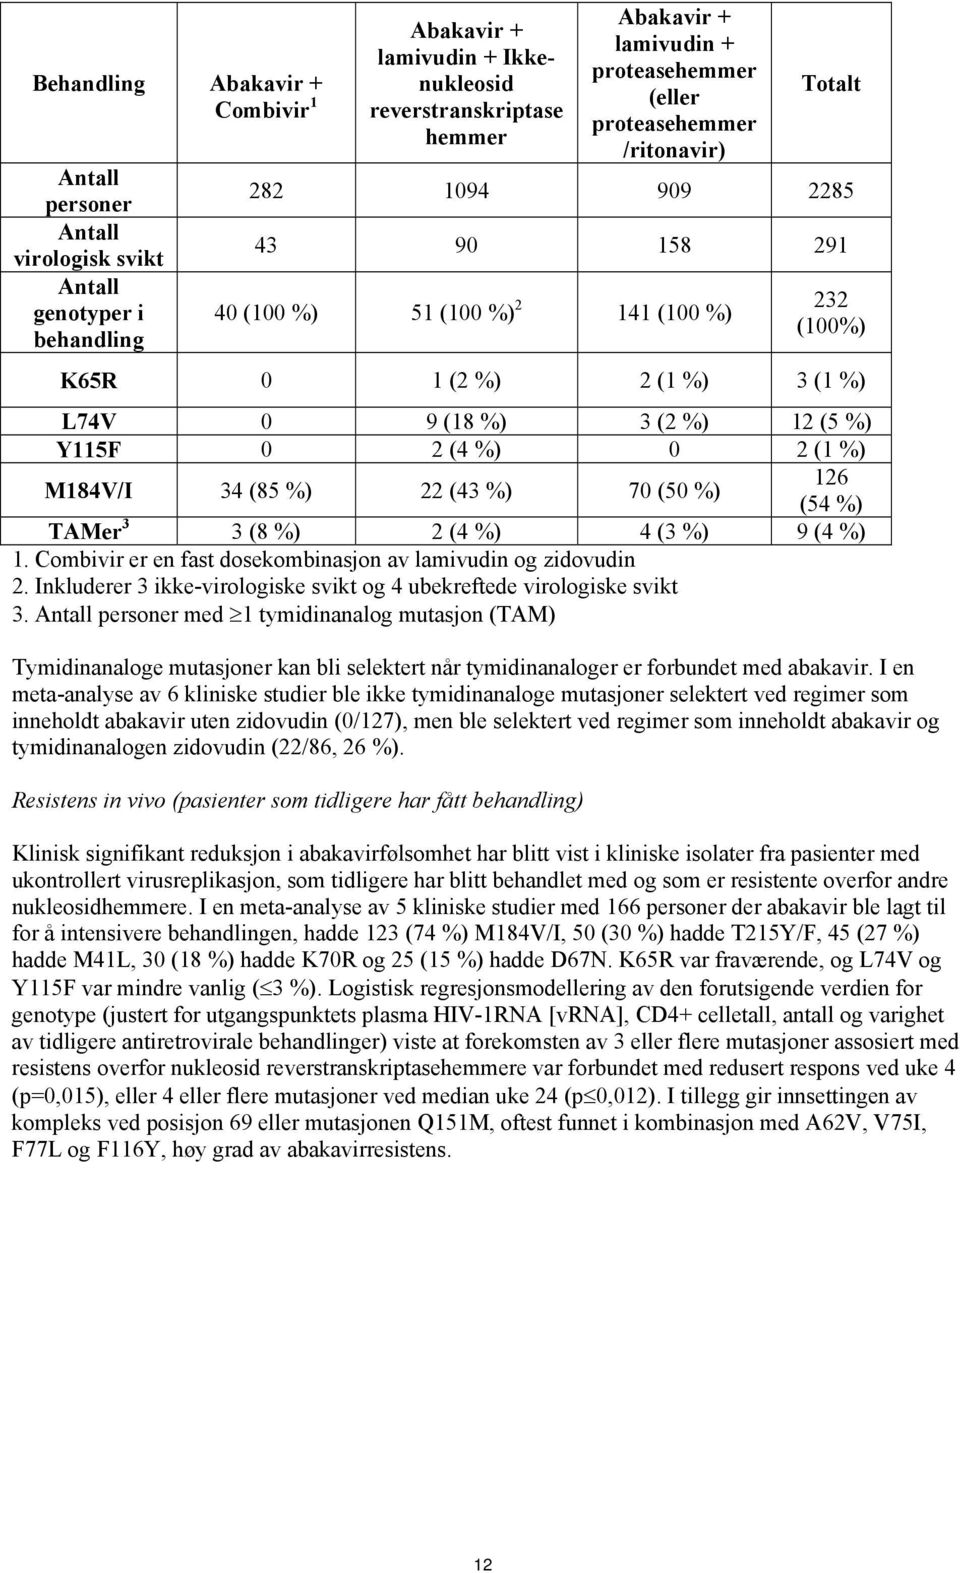 Y115F 0 2 (4 %) 0 2 (1 %) M184V/I 34 (85 %) 22 (43 %) 70 (50 %) 126 (54 %) TAMer 3 3 (8 %) 2 (4 %) 4 (3 %) 9 (4 %) 1. Combivir er en fast dosekombinasjon av lamivudin og zidovudin 2.